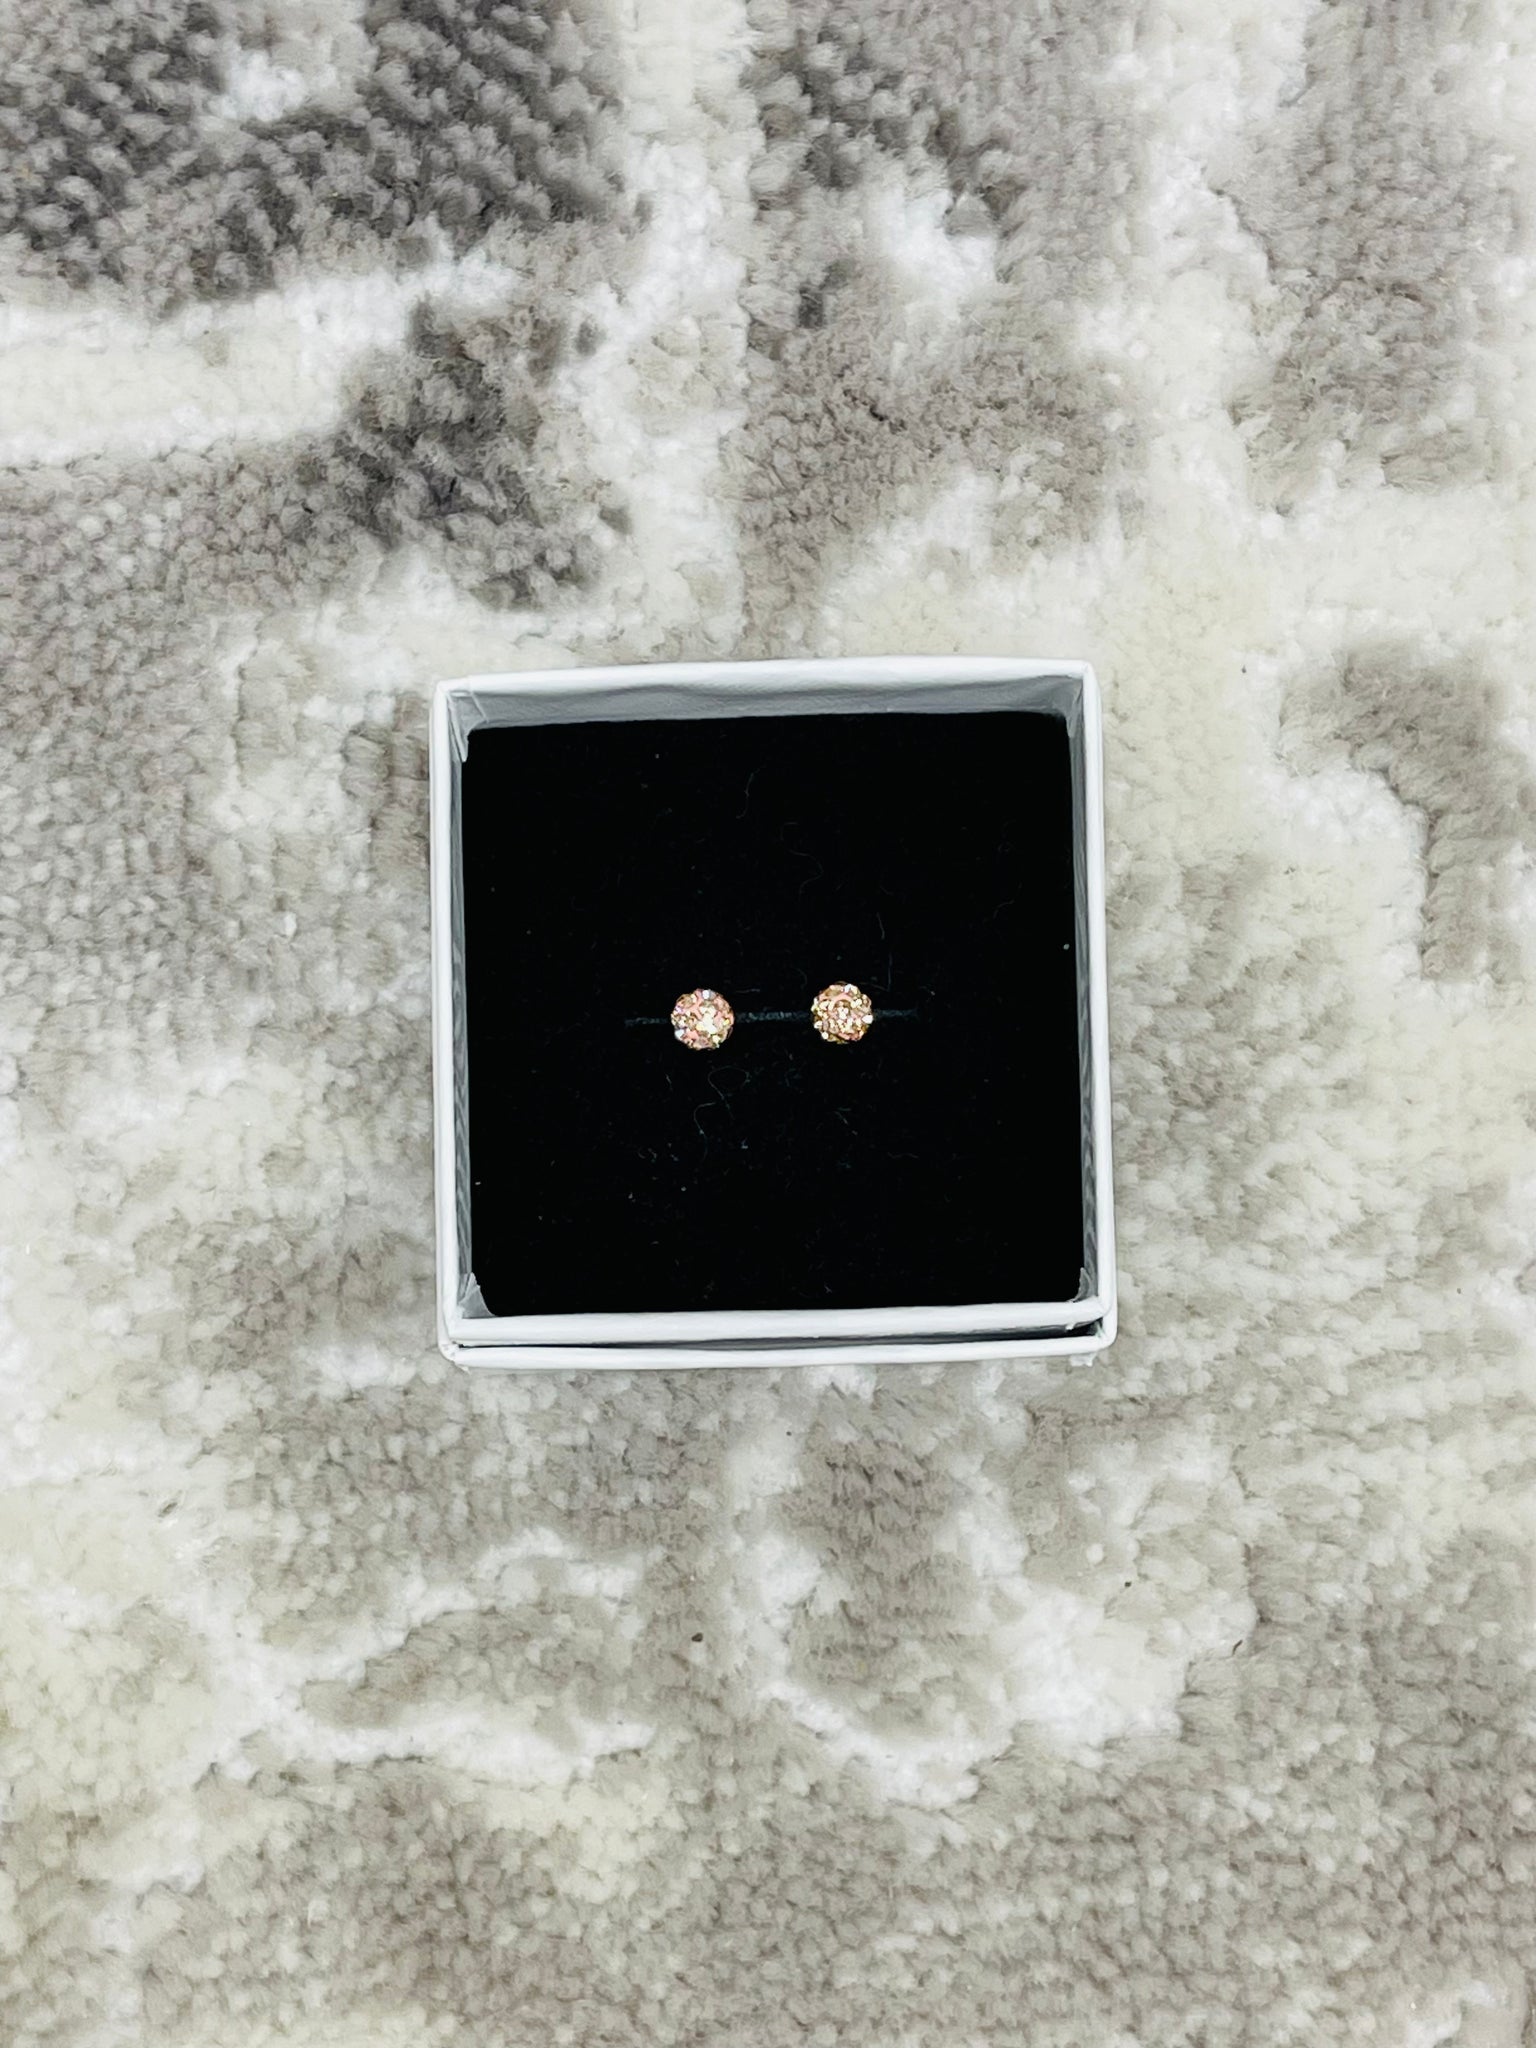 Crystal Ball Earrings - Rose Gold 4mm